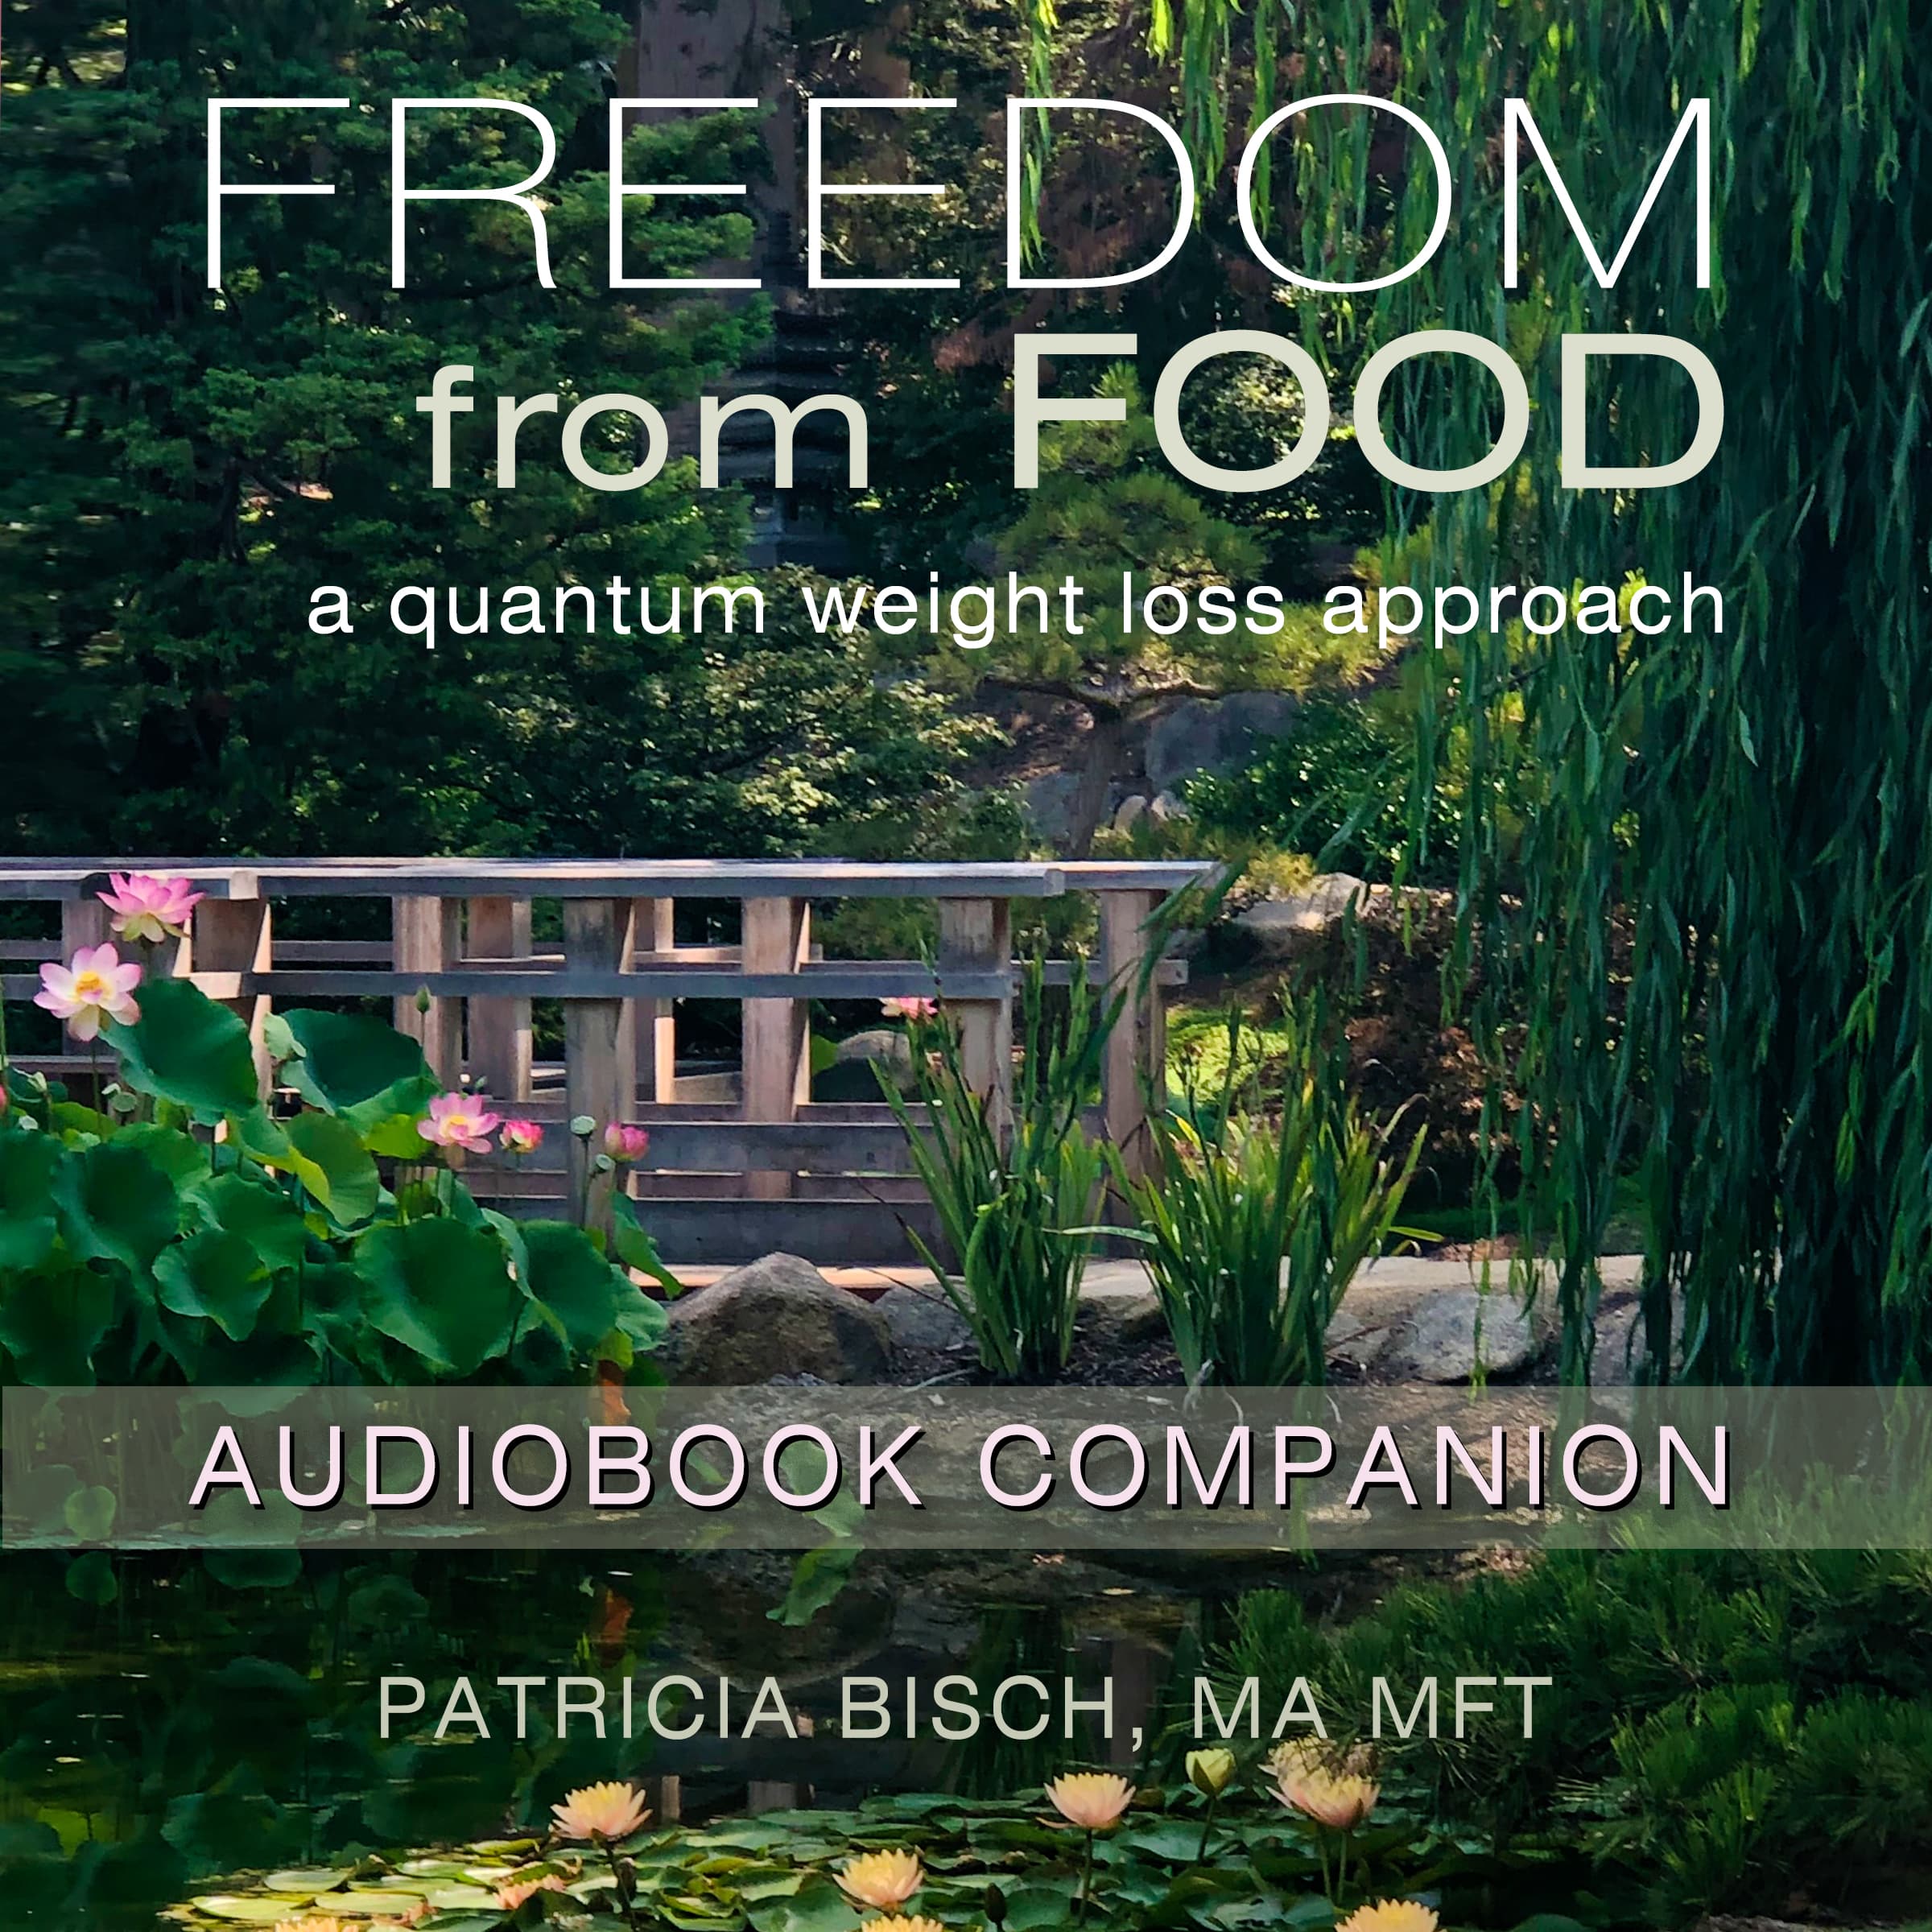 FFF Audiobook Companion Cover